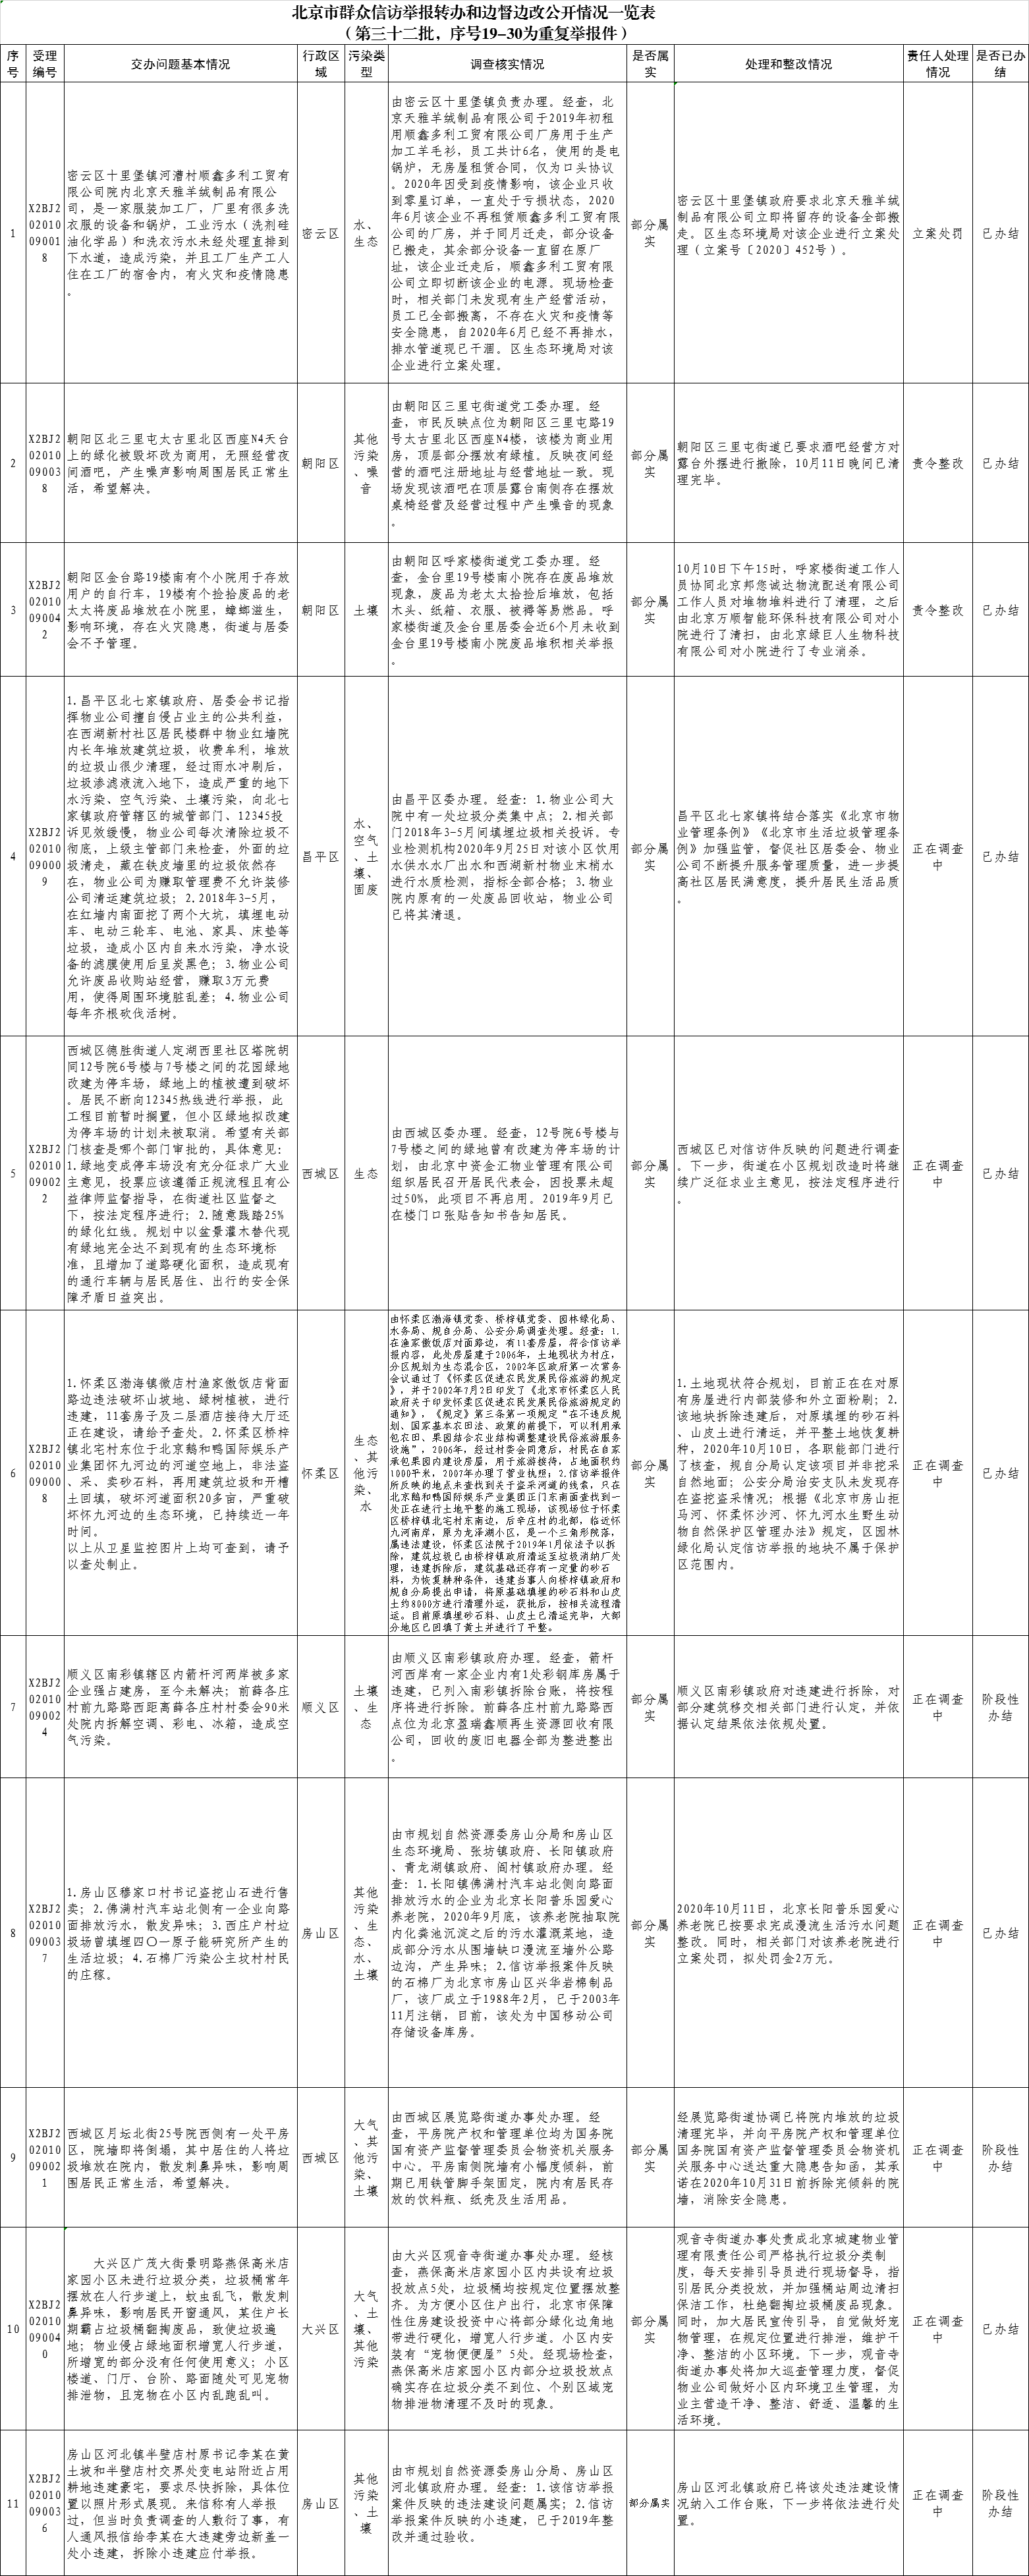 北京市群众信访举报转办和边督边改公开情况一览表(第三十二批)